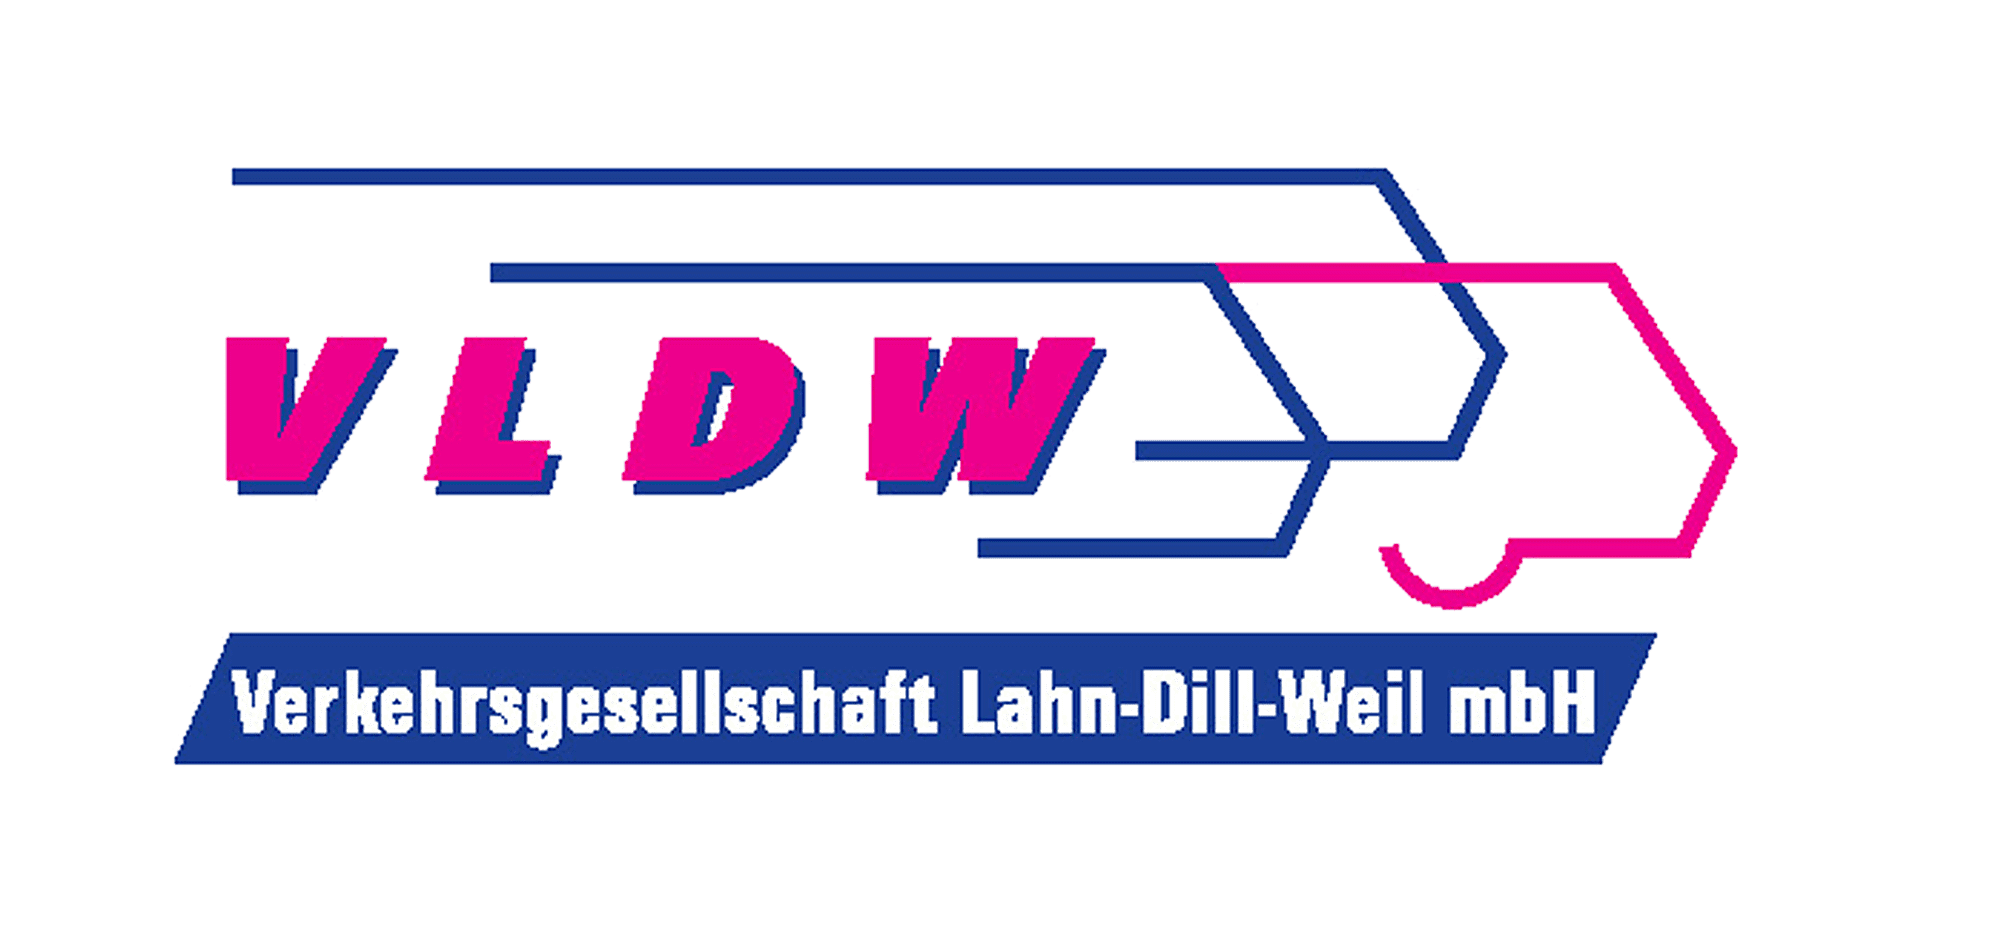 Logo VLDW - Link zur Webseite